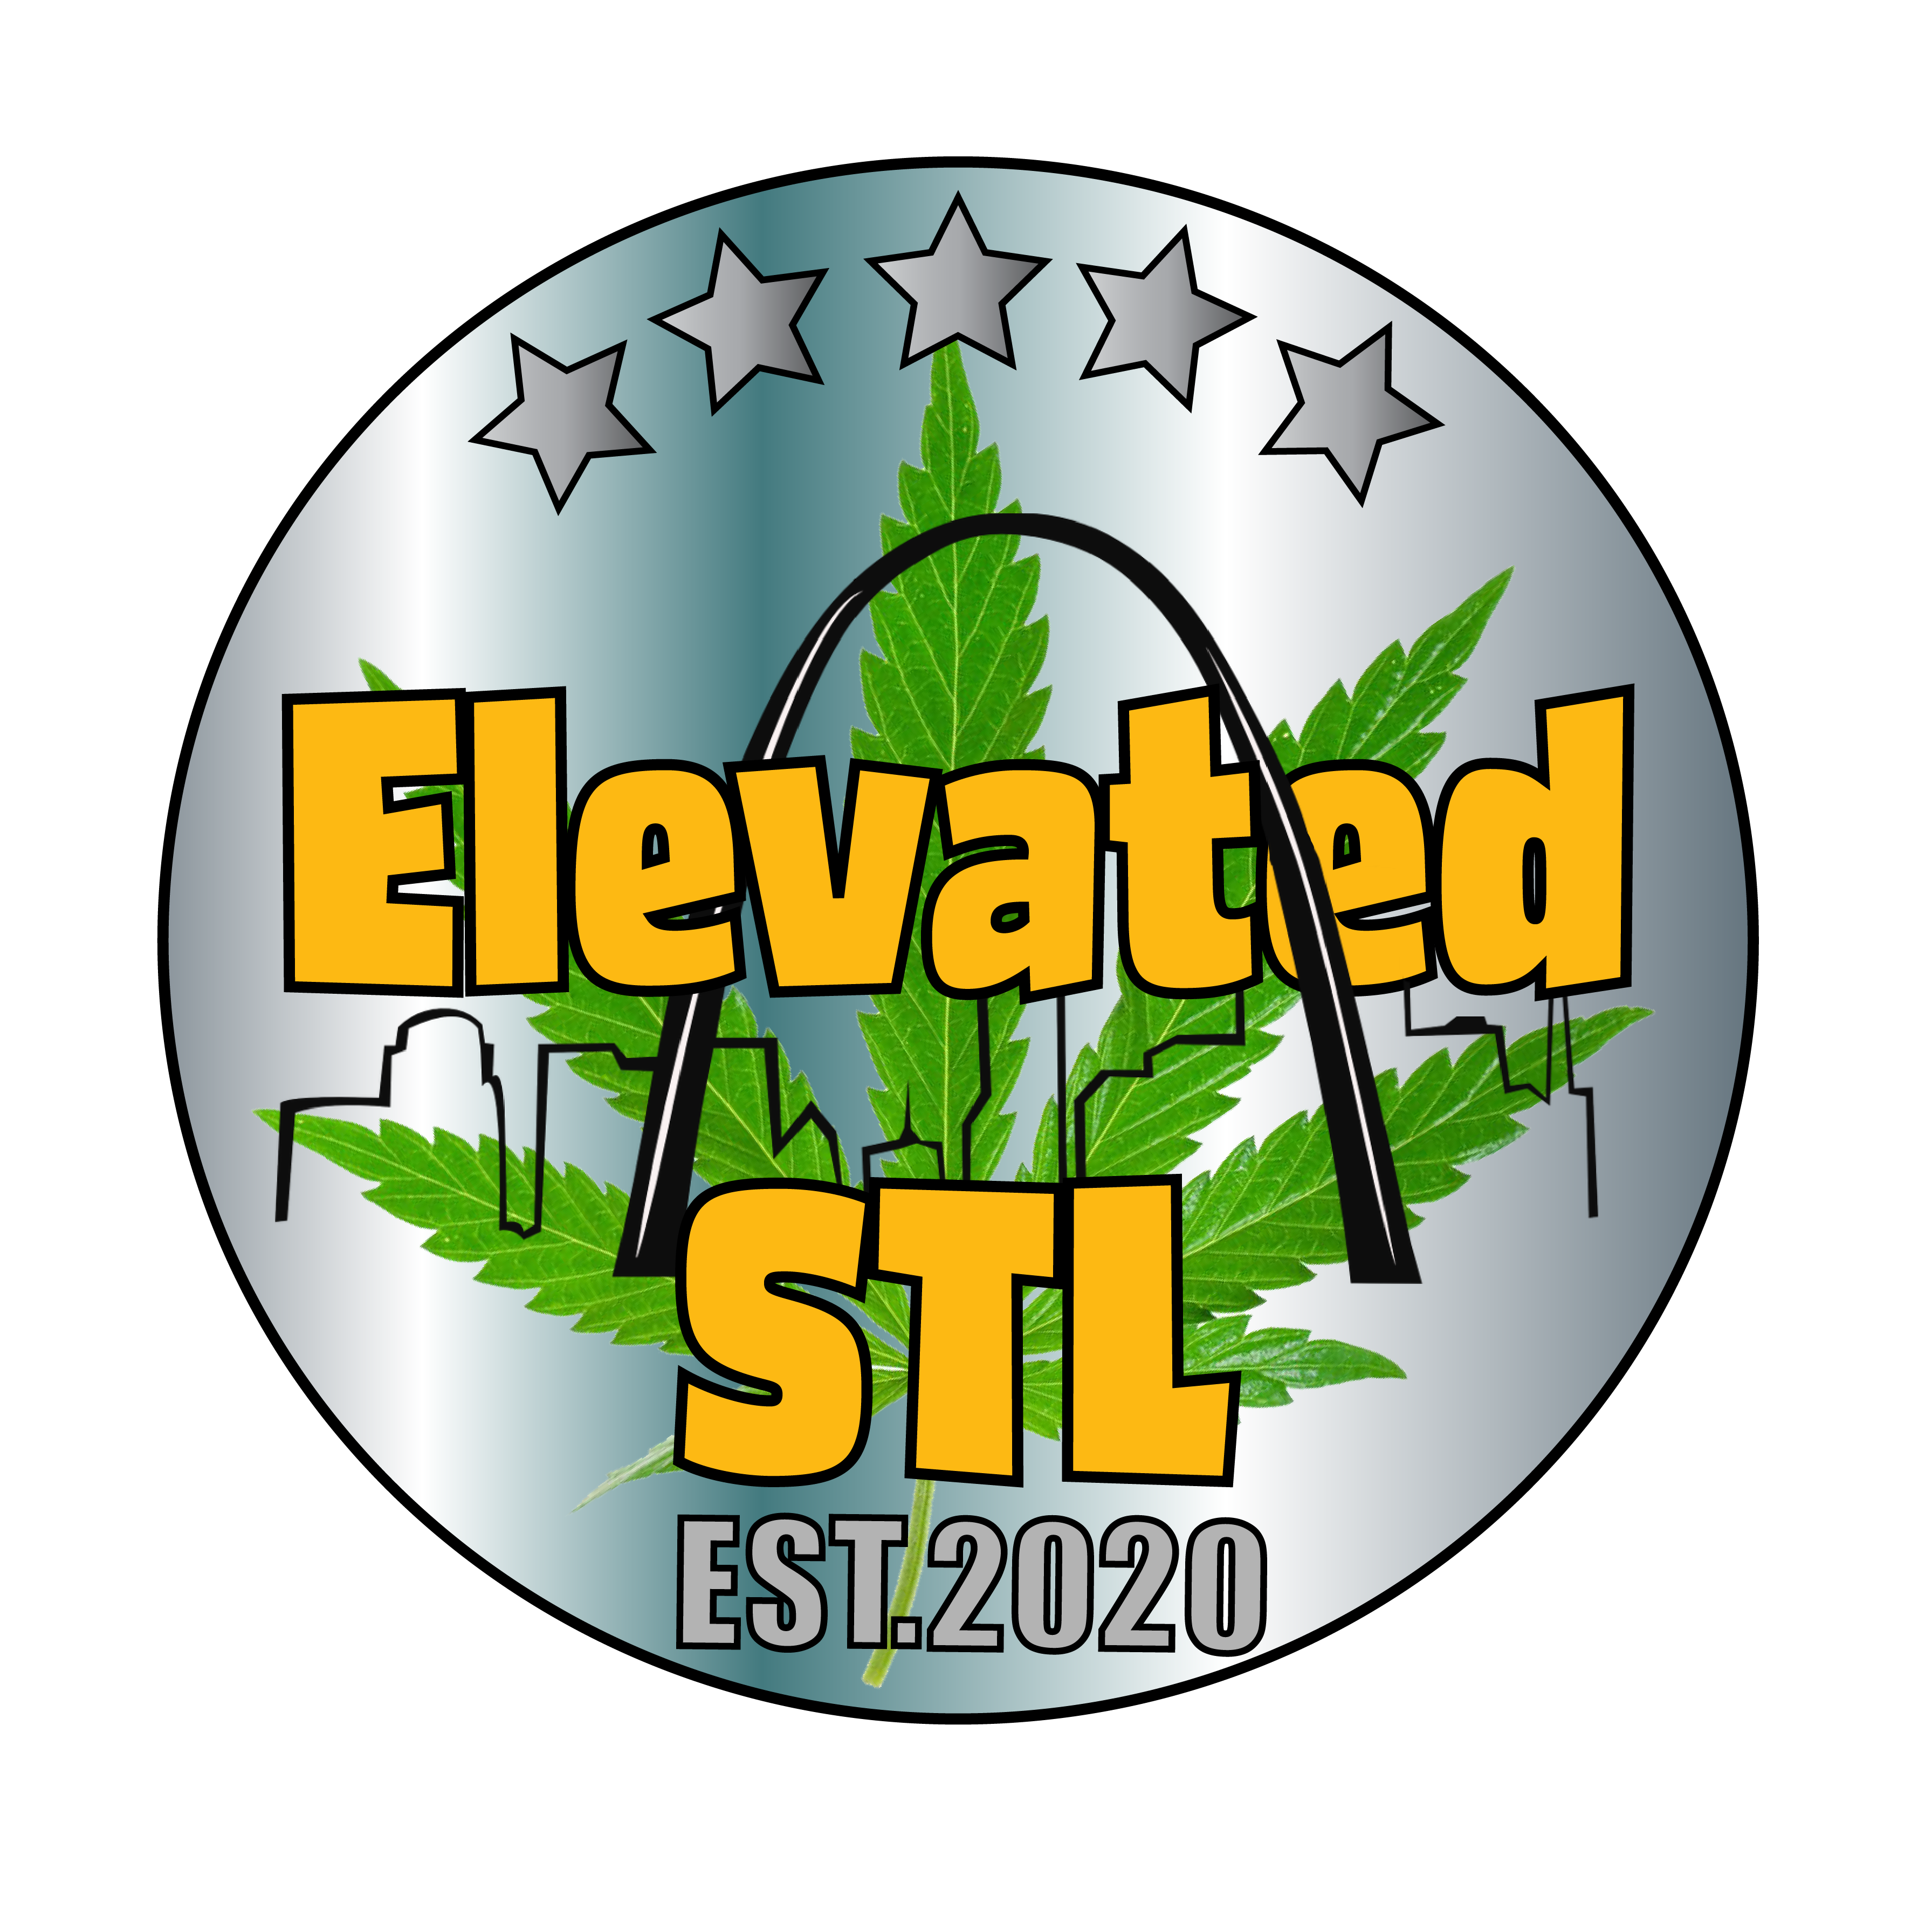 Elevated STL, Saint Louis, Missouri, Masked Growers, ElevatedSTL, Elevated St. Louis